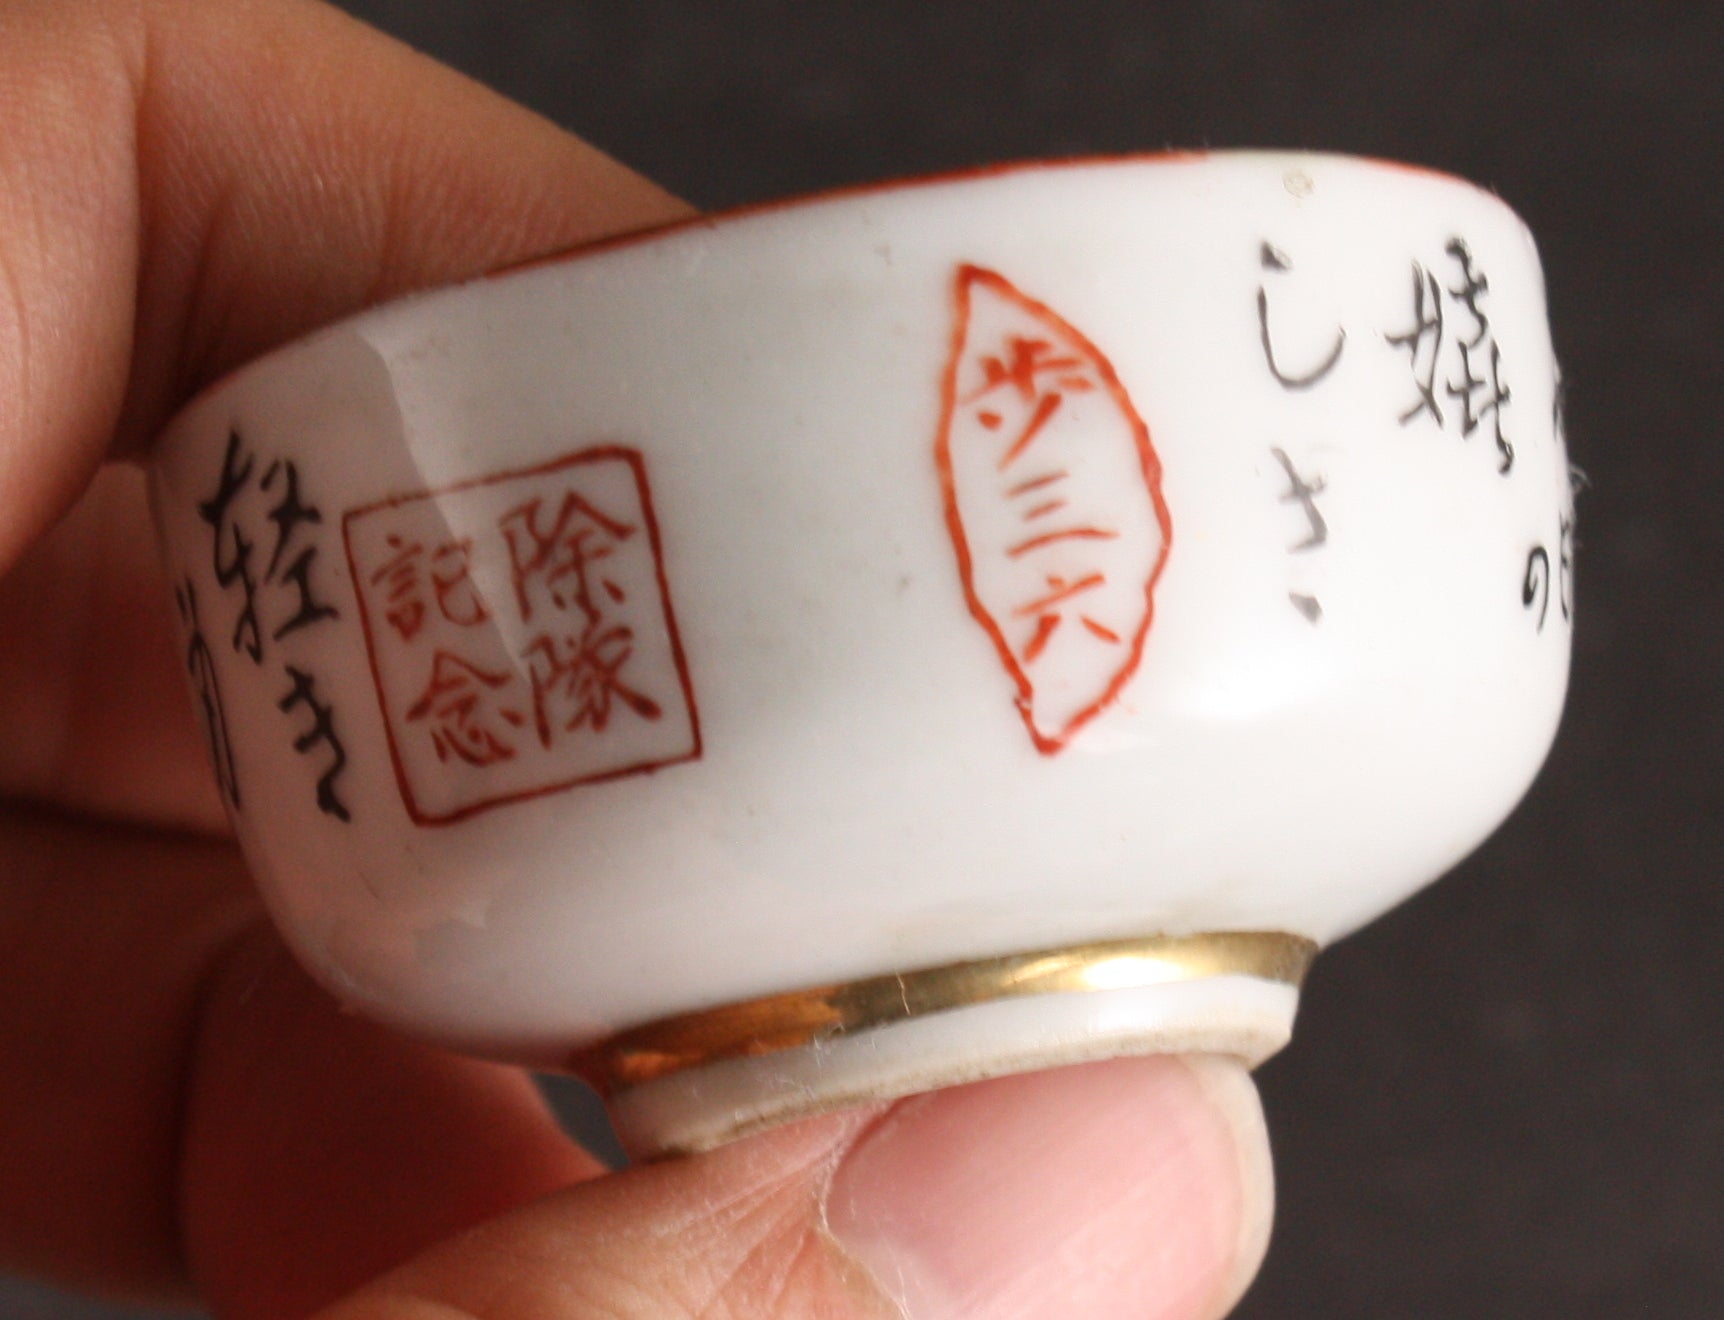 Antique Japanese Military Goldwash Star Poem Kutani Army Sake Cup